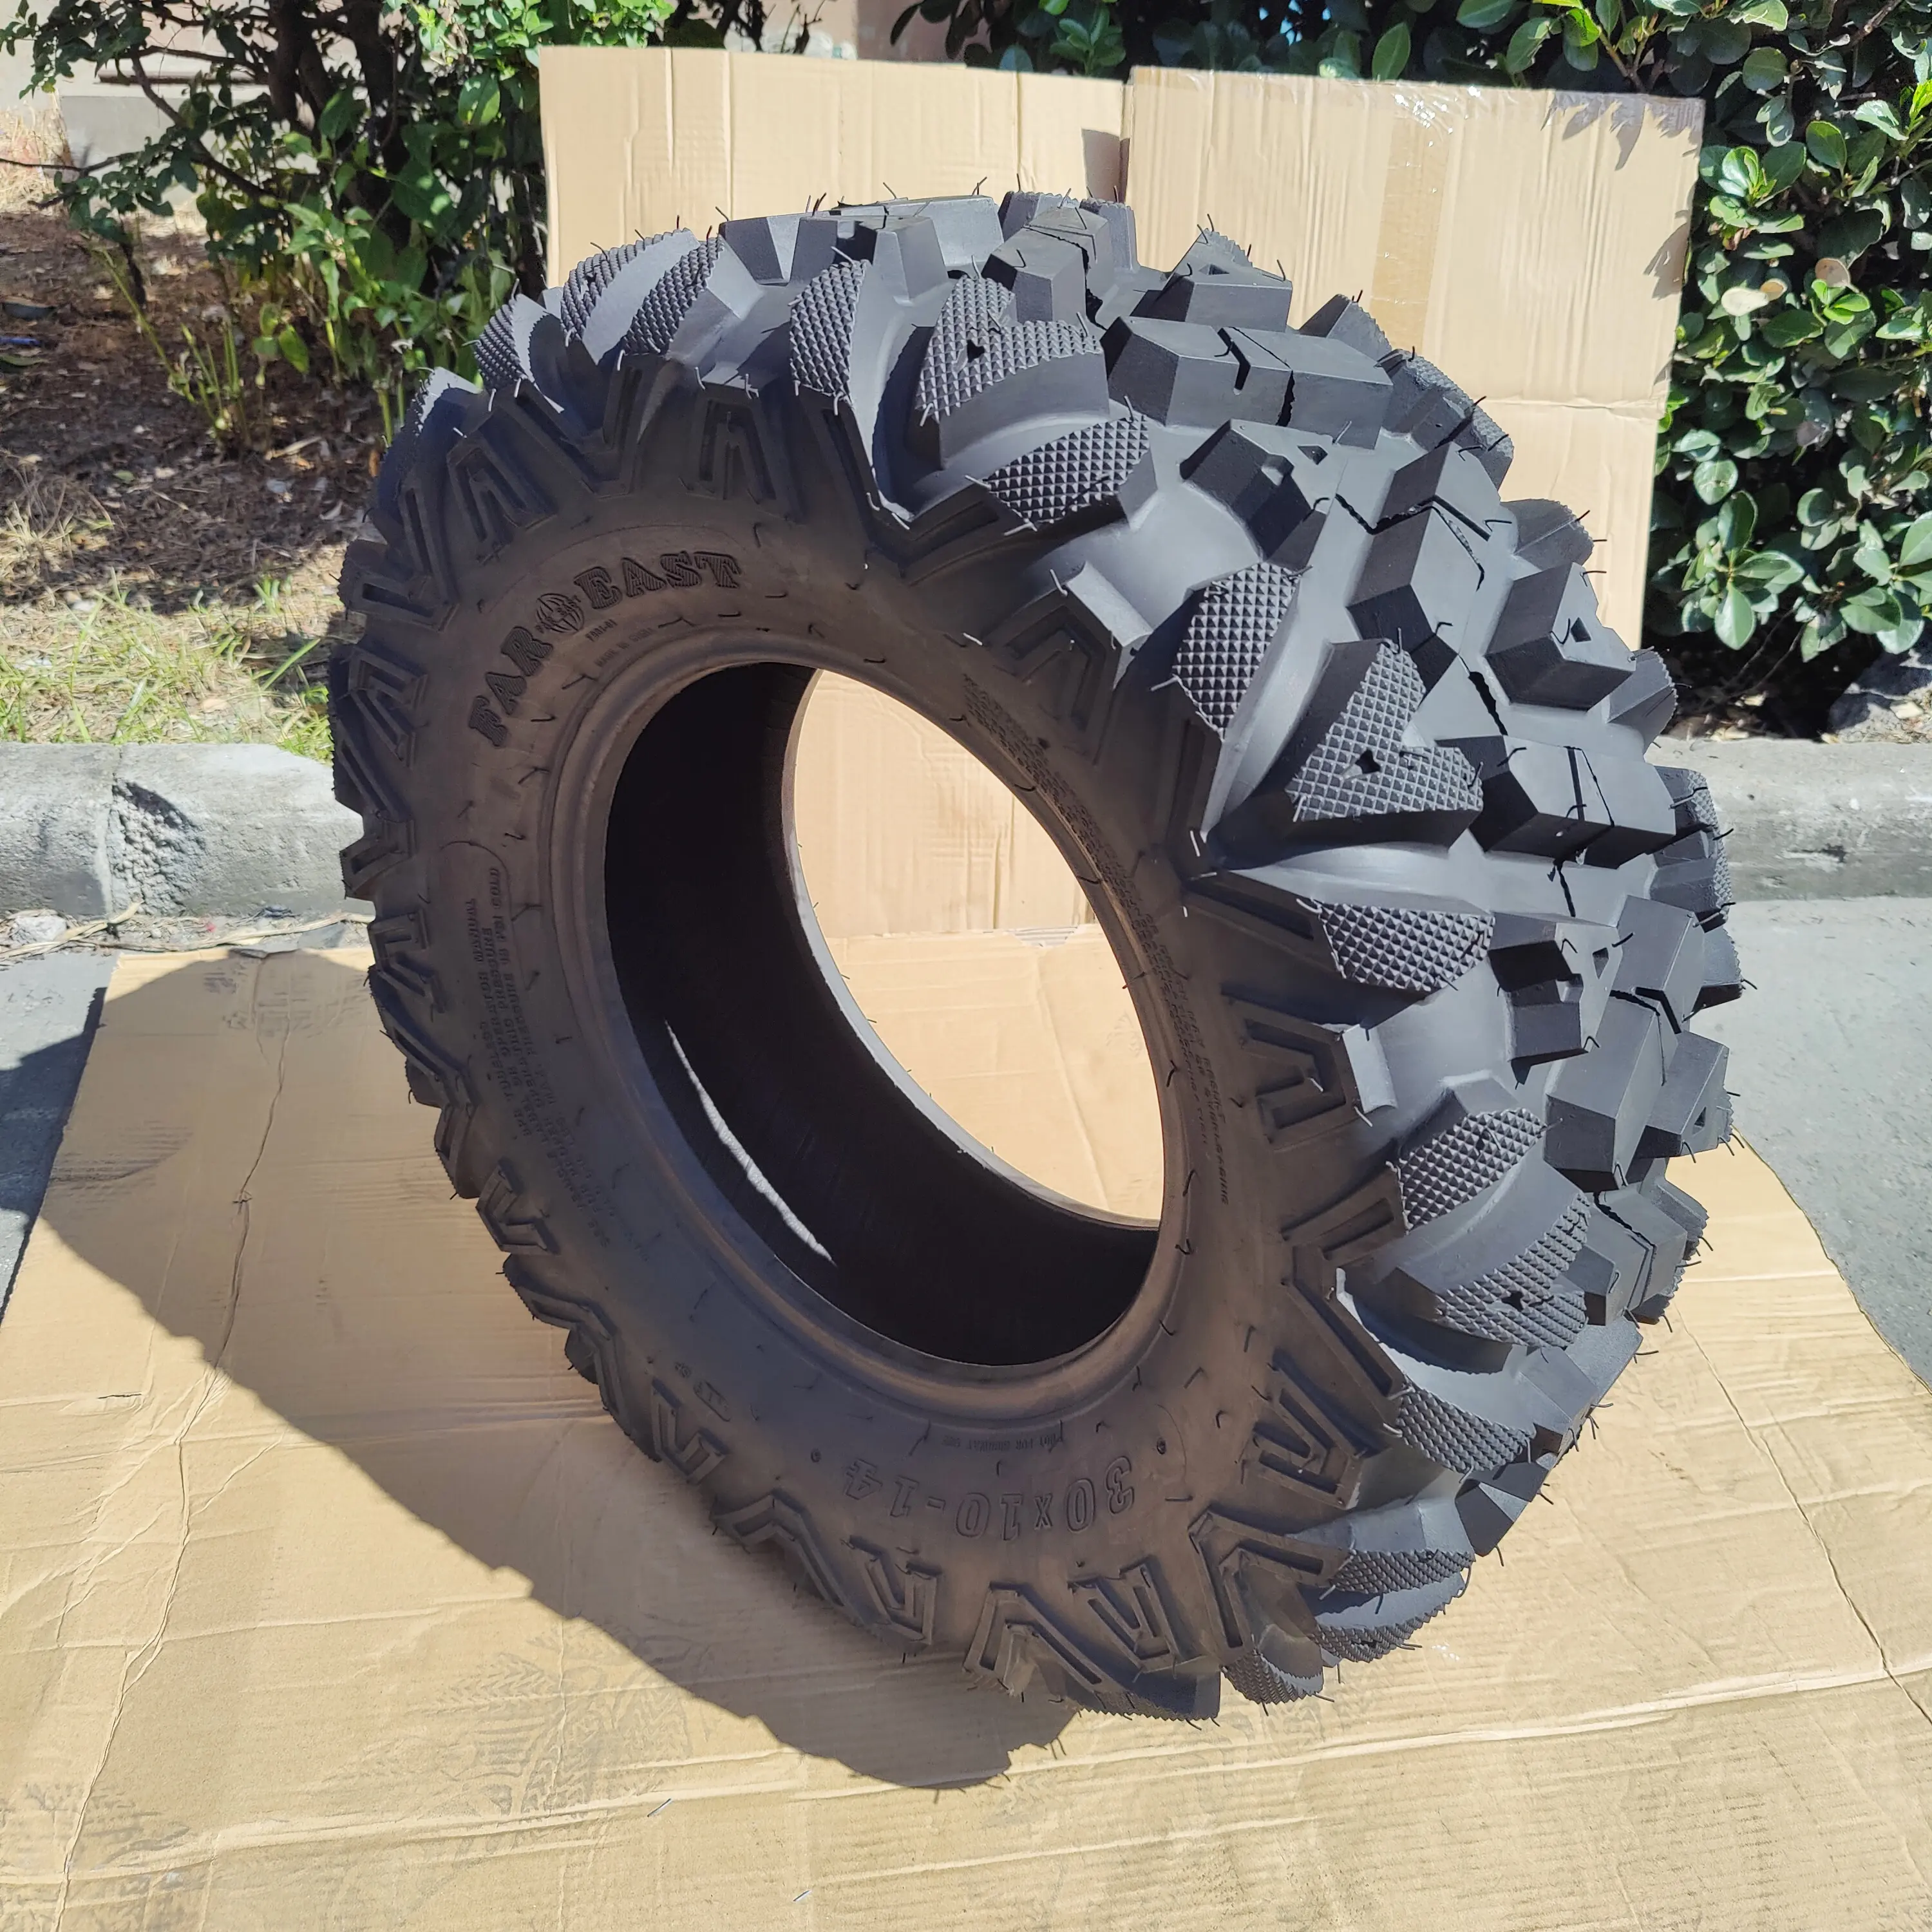 30x10 -14 pneumatico industriale ATV RTV UTV pneumatico fuoristrada solo pneumatici per carrello da Golf